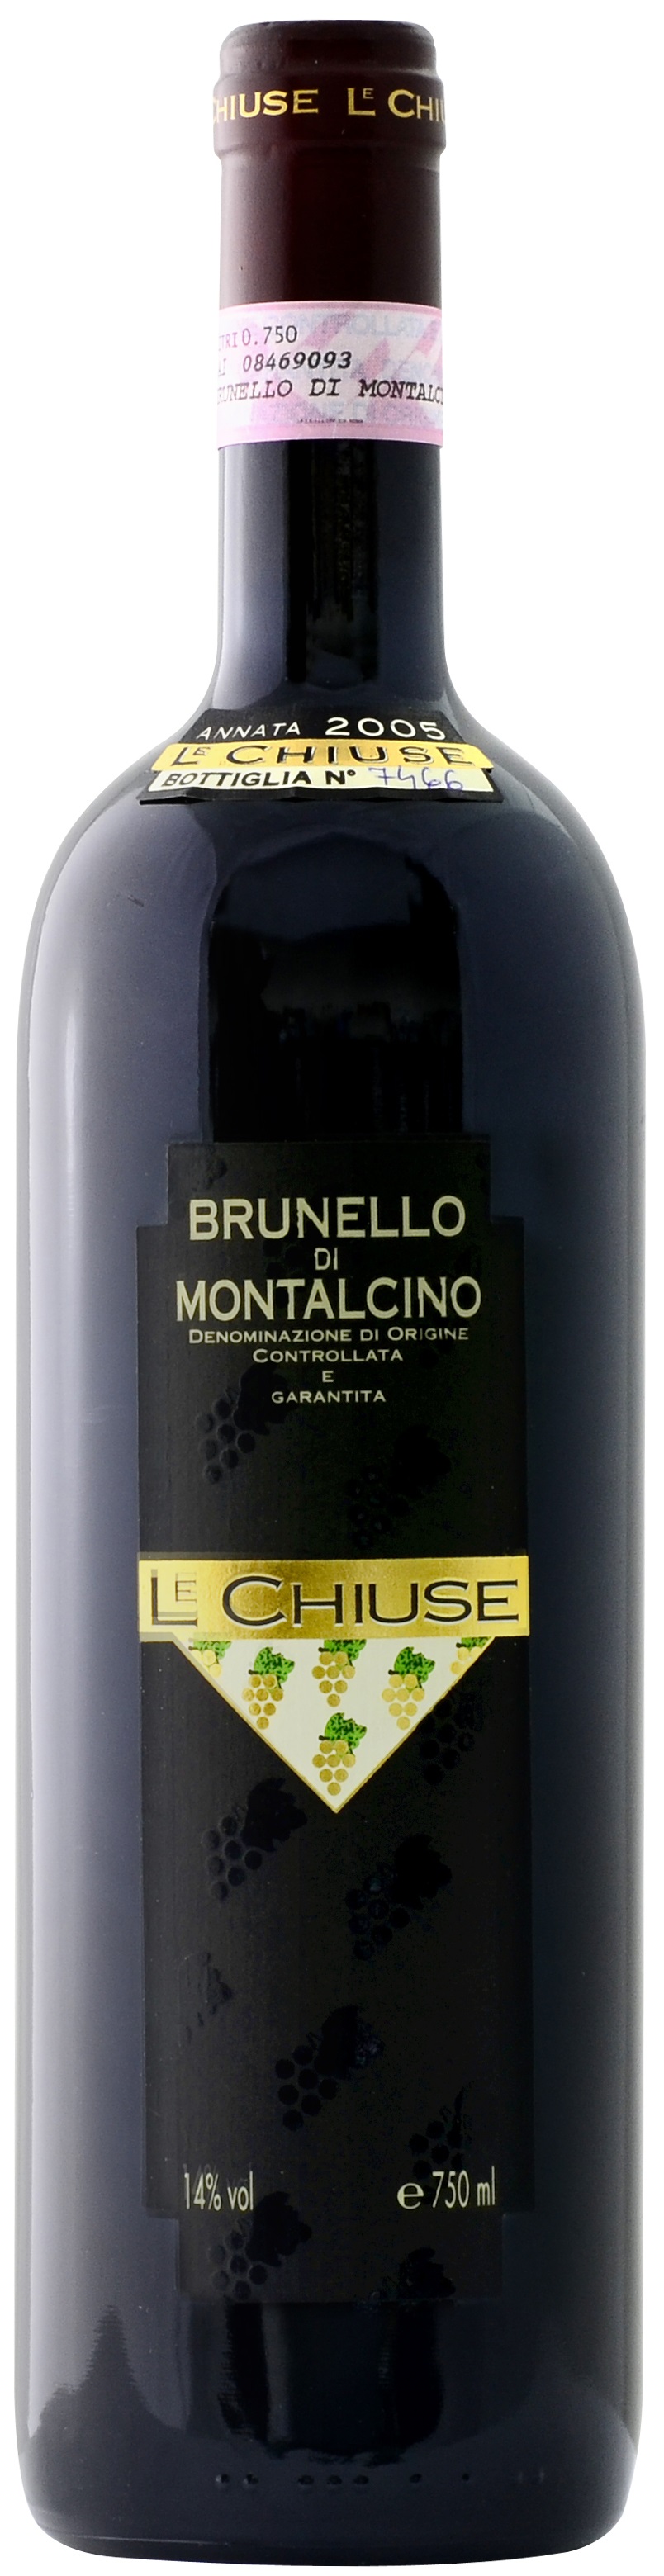 Le Chiuse Brunello Di Montalcino 2015 750ml